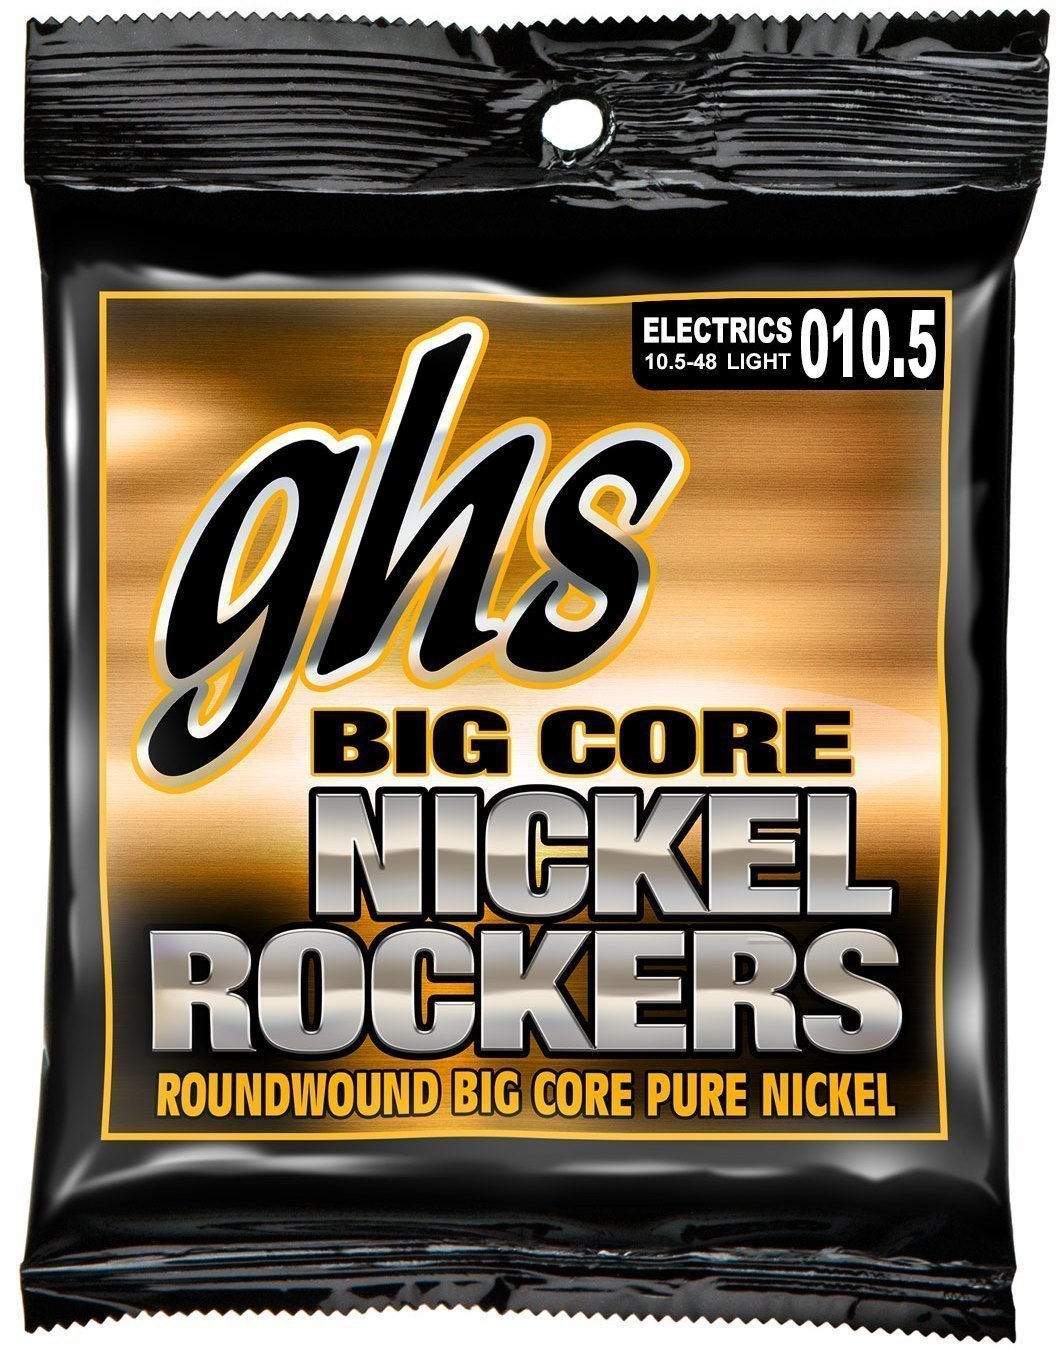 Struny pre elektrickú gitaru GHS Big Core Nickel Rockers 10,5-48 Struny pre elektrickú gitaru